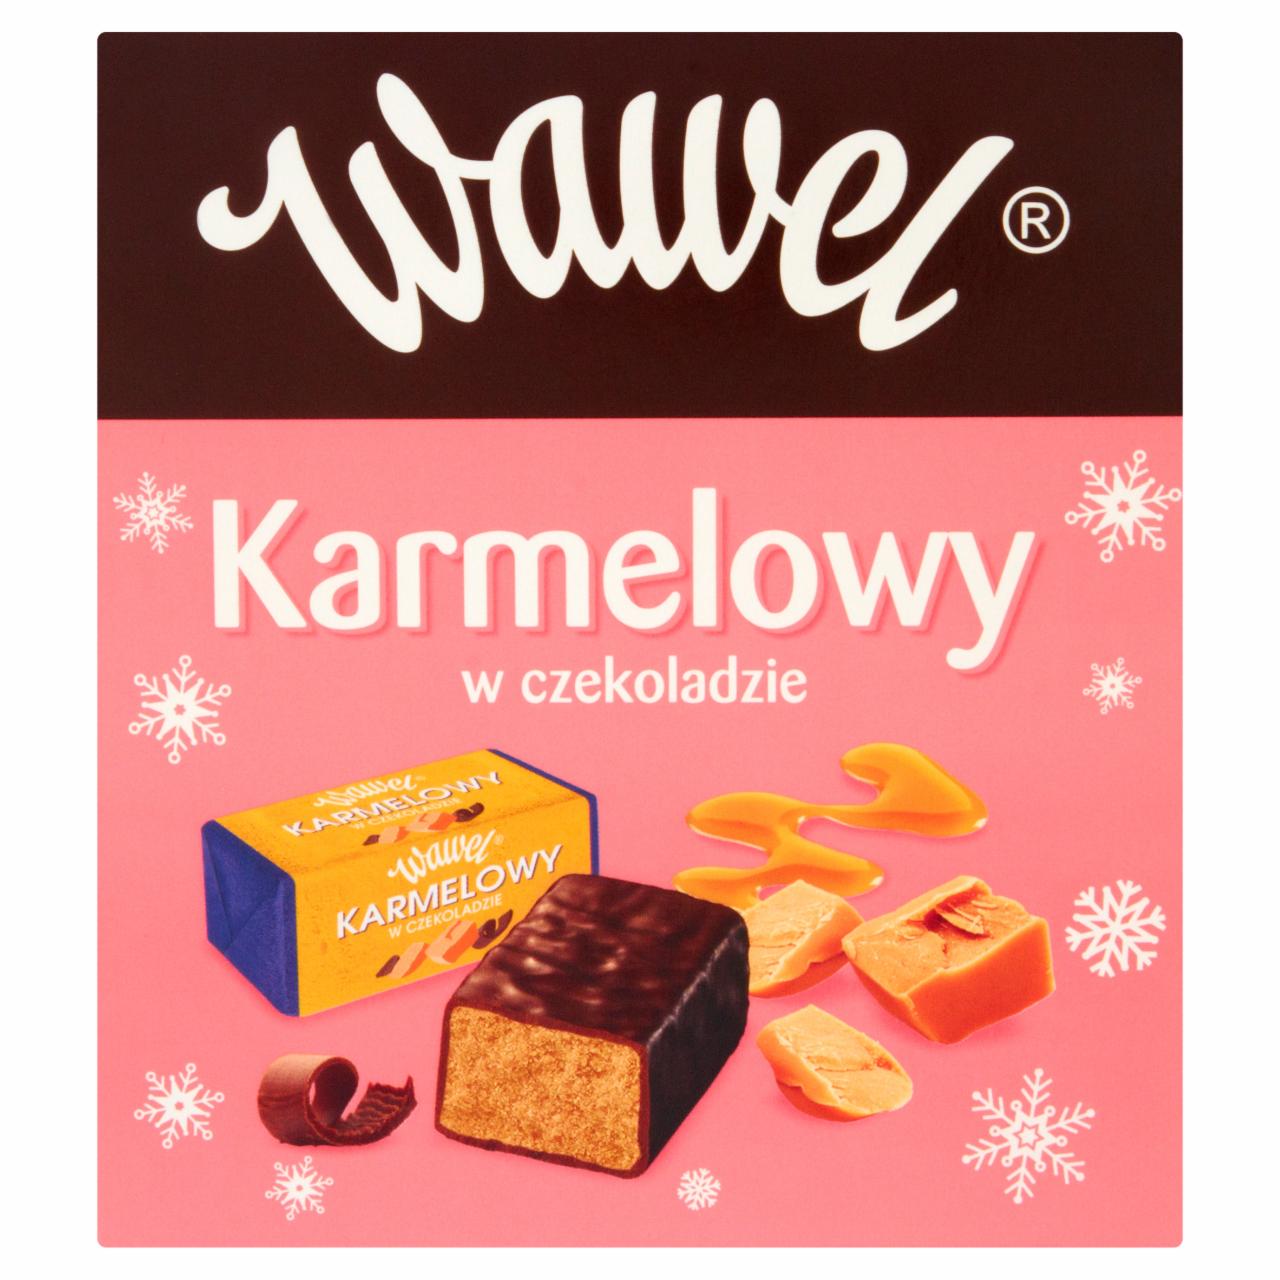 Zdjęcia - Wawel Karmelowy w czekoladzie Wyrób z czekoladą mleczną i alkoholem 500 g